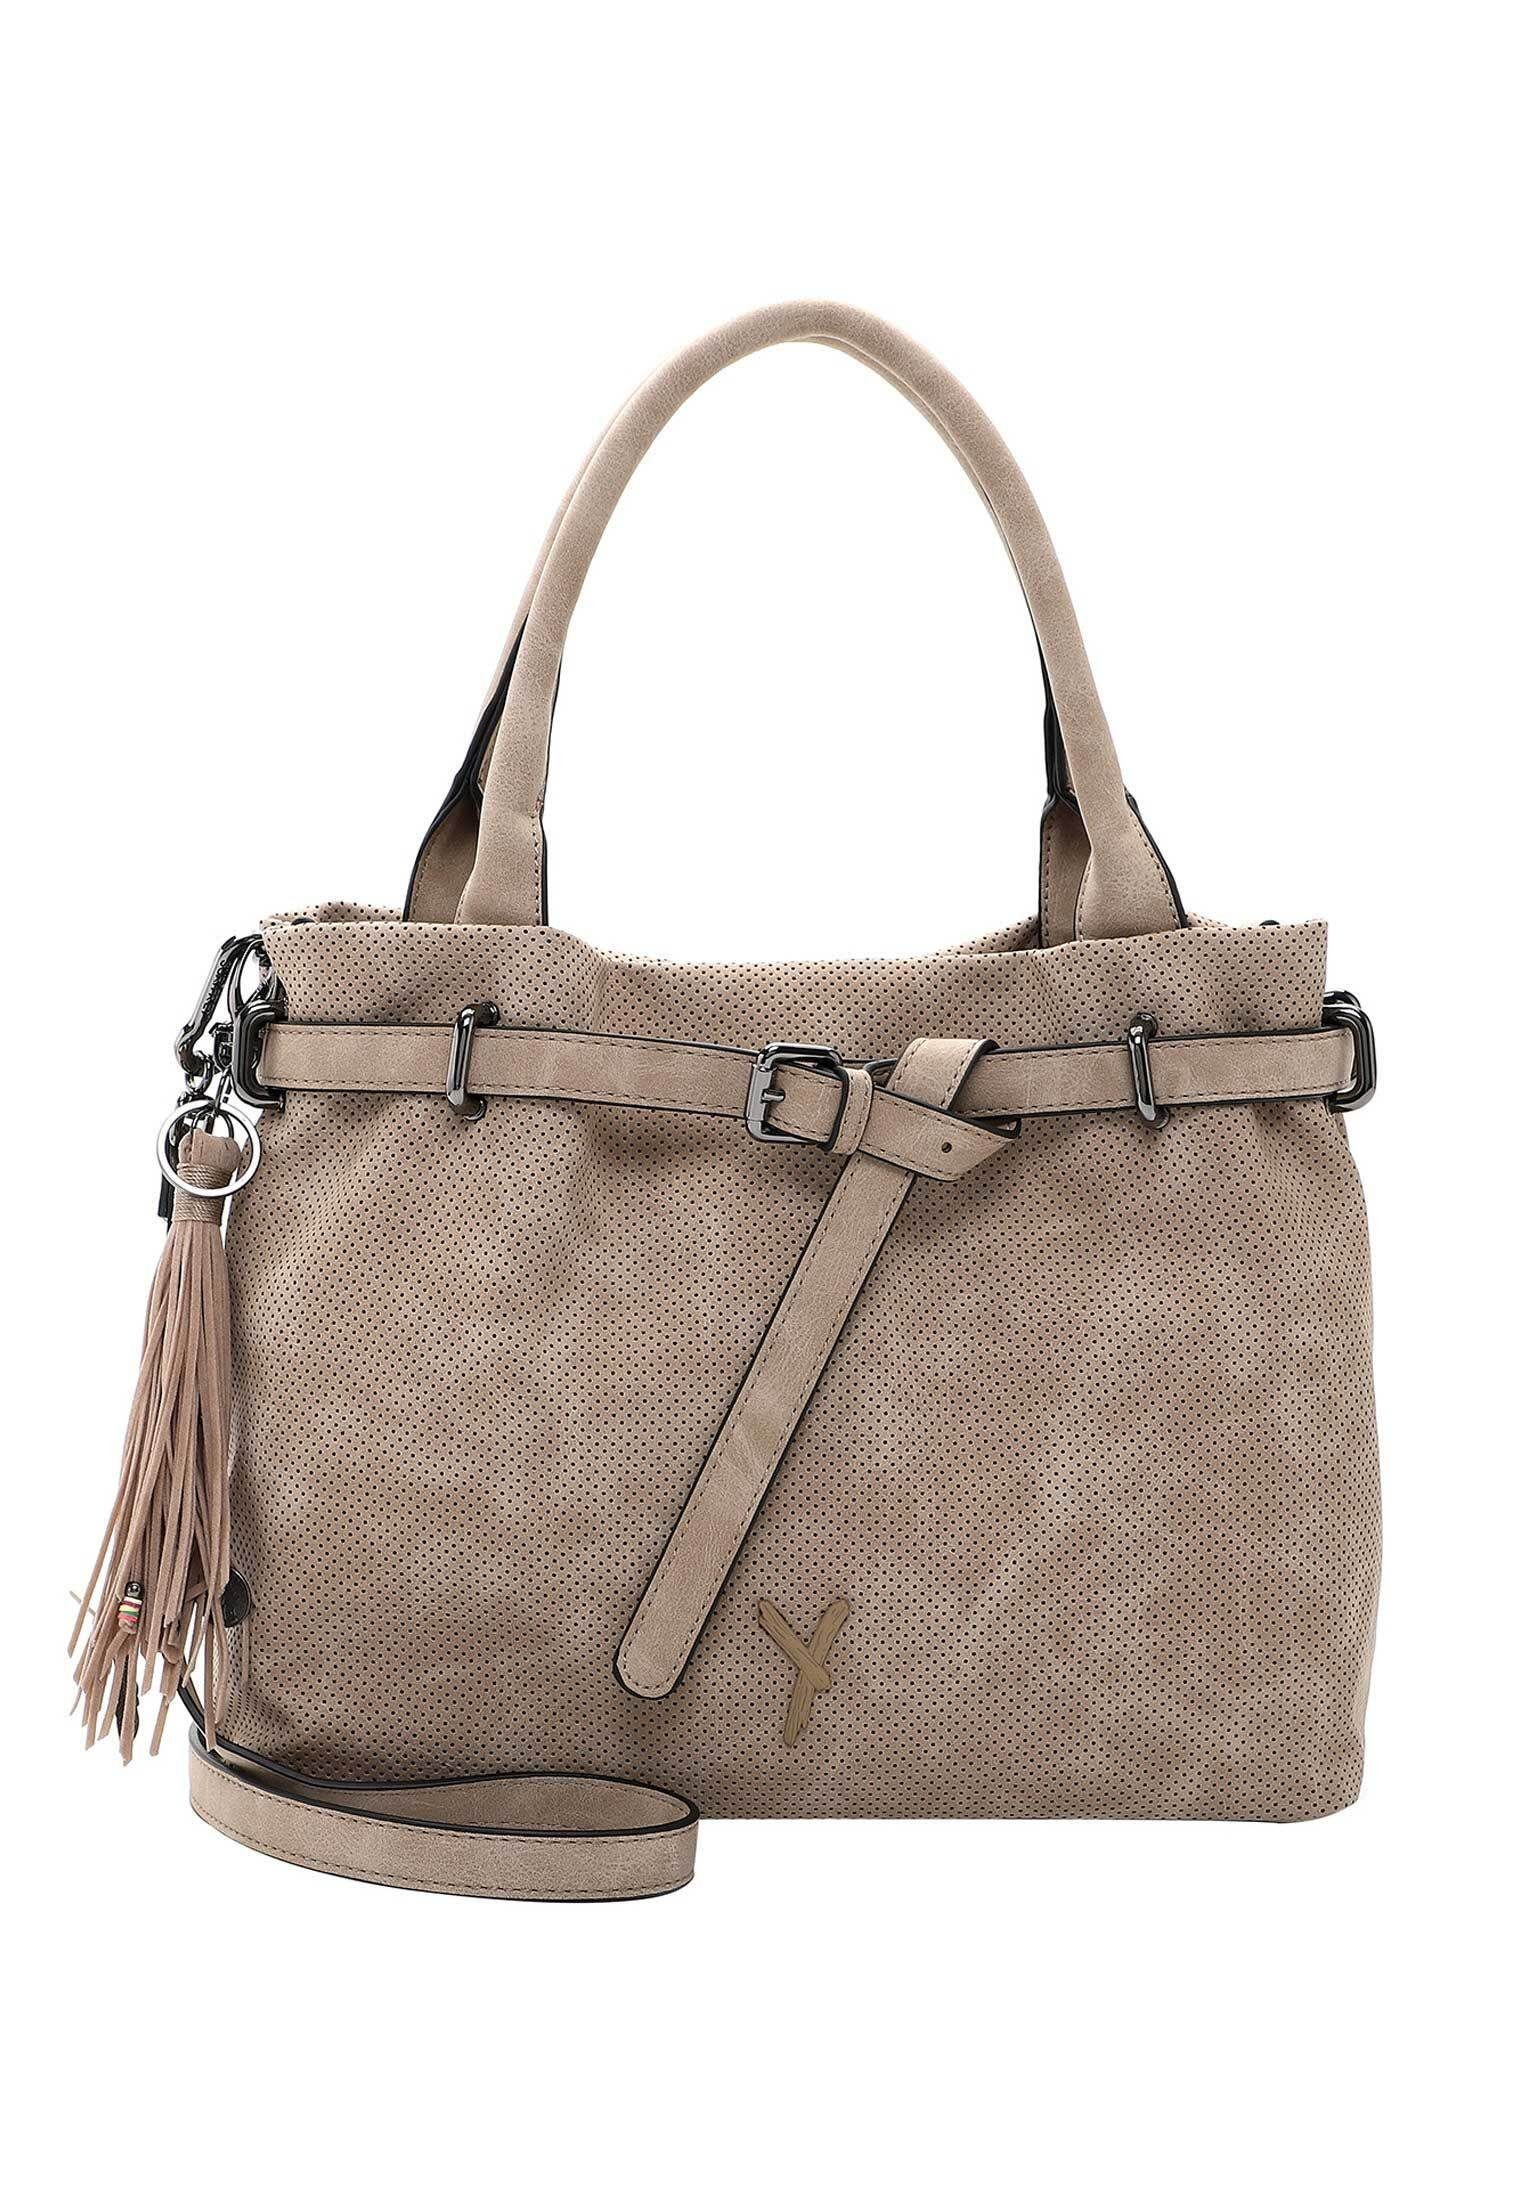 Günstige Damentaschen online kaufen » Damentaschen SALE | OTTO